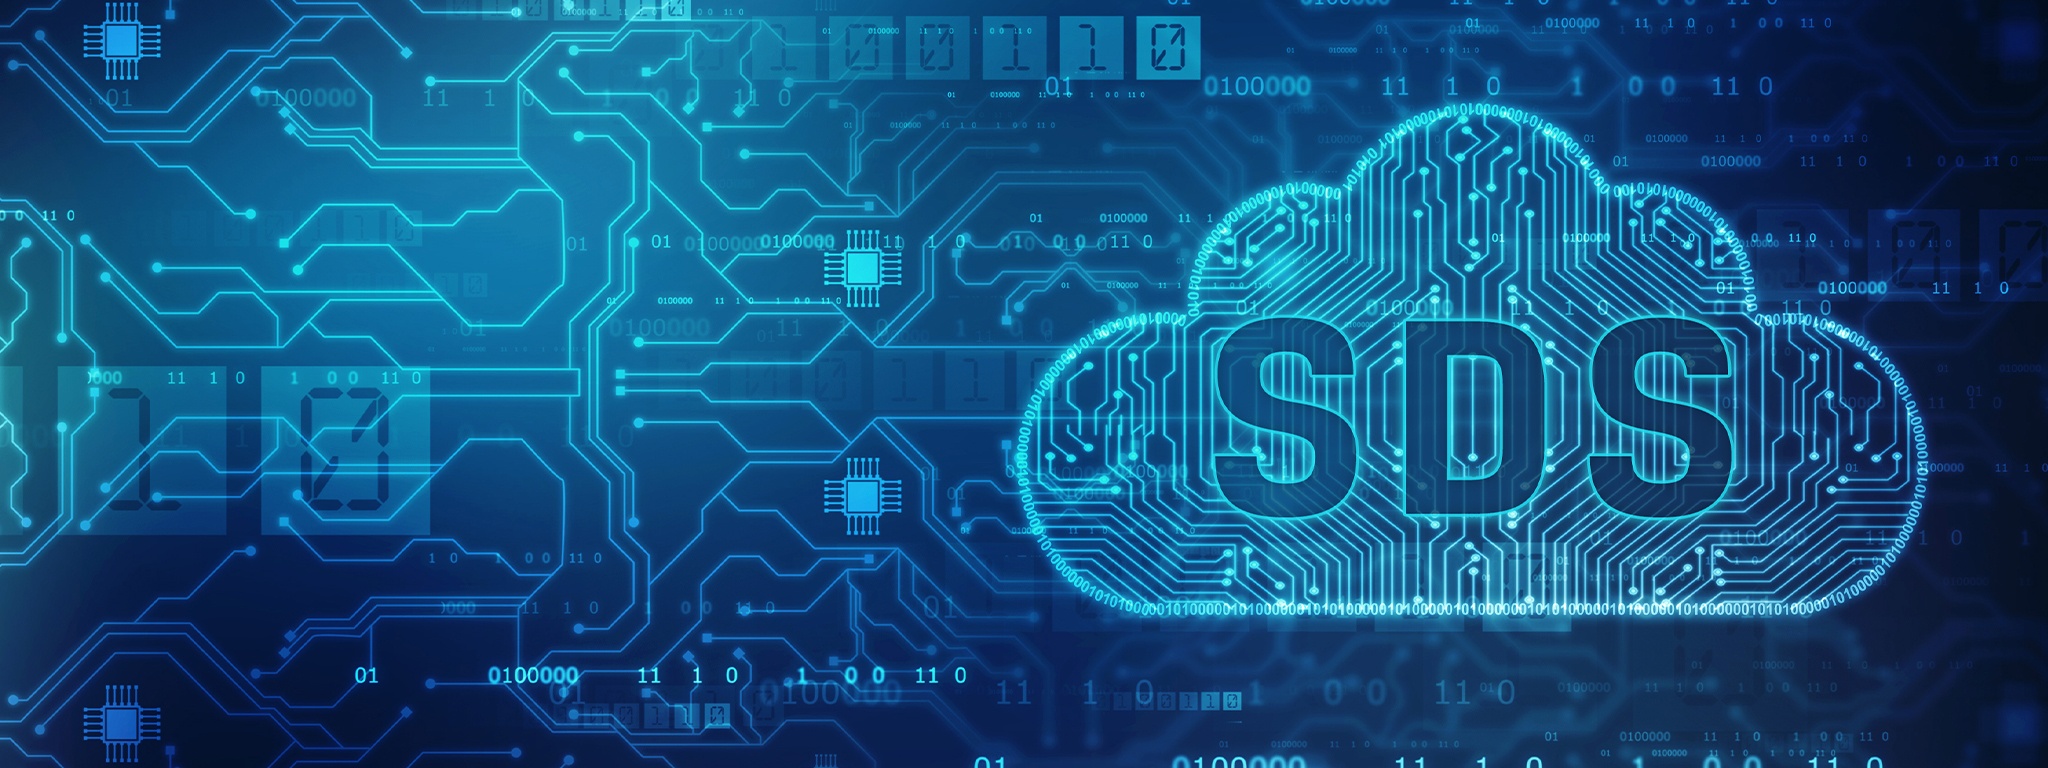 Imagen del contorno de una nube con las letras SDS sobre una ilustración de trazados y chips de una placa de circuito